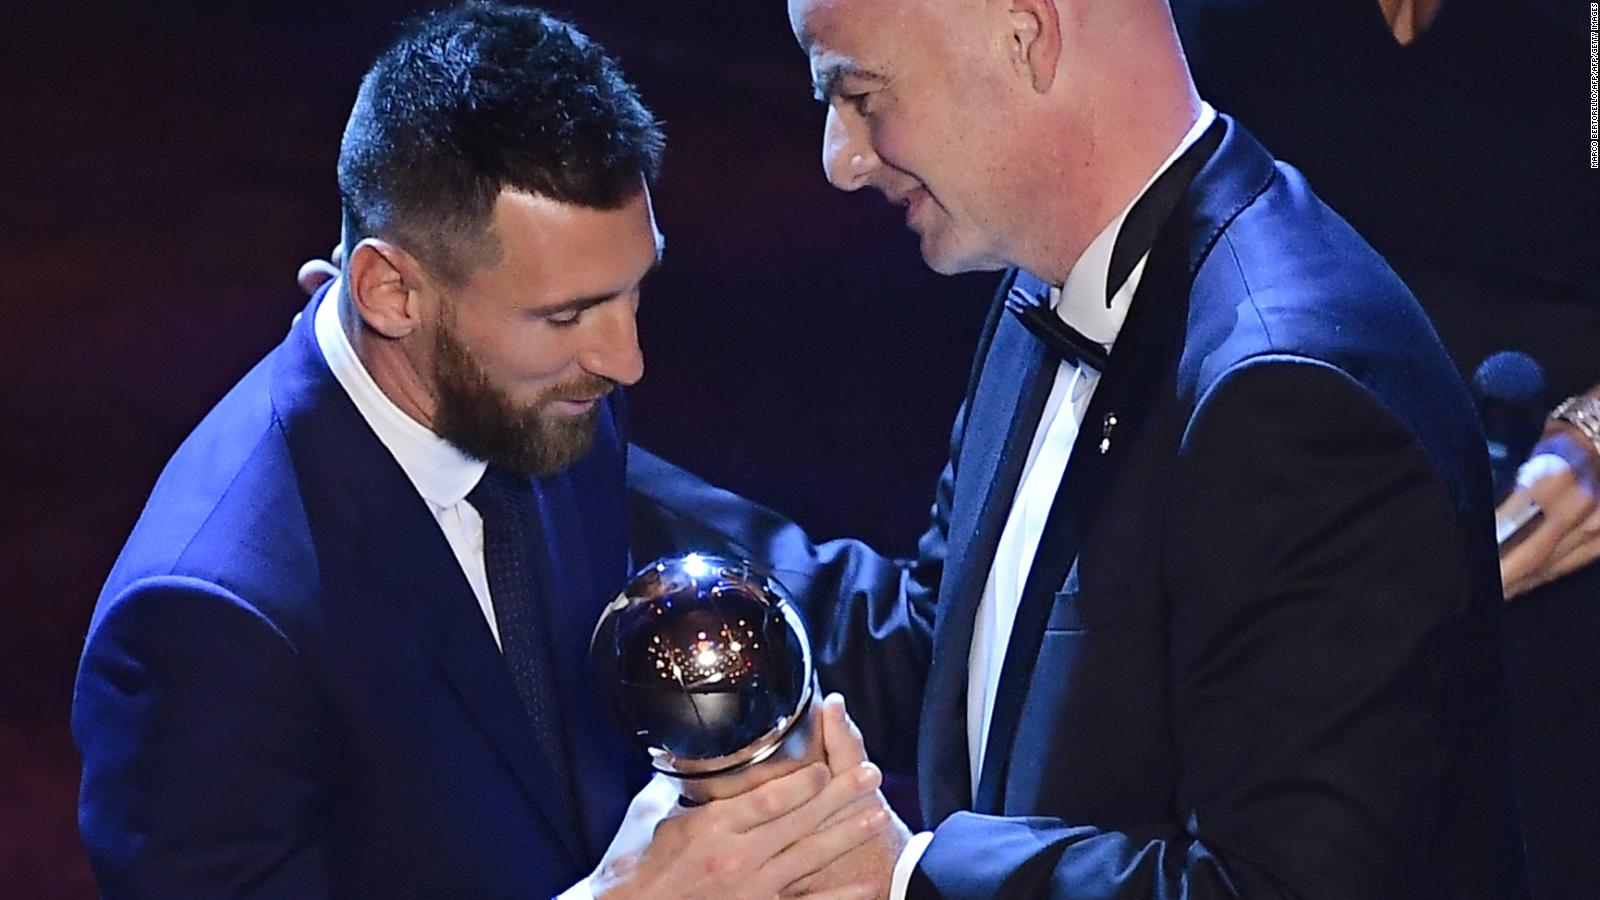 ¿Mereció Messi ganar el premio The Best de la FIFA? Video CNN